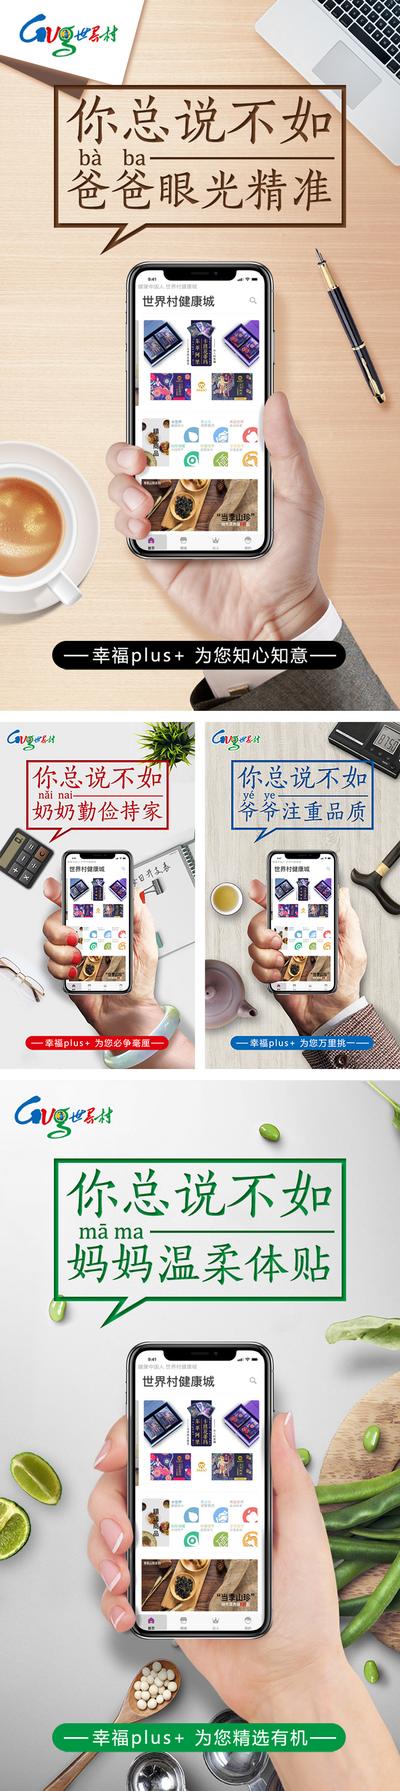 南门网 海报 APP 手型 手机 文案 创意 一家人 小清新